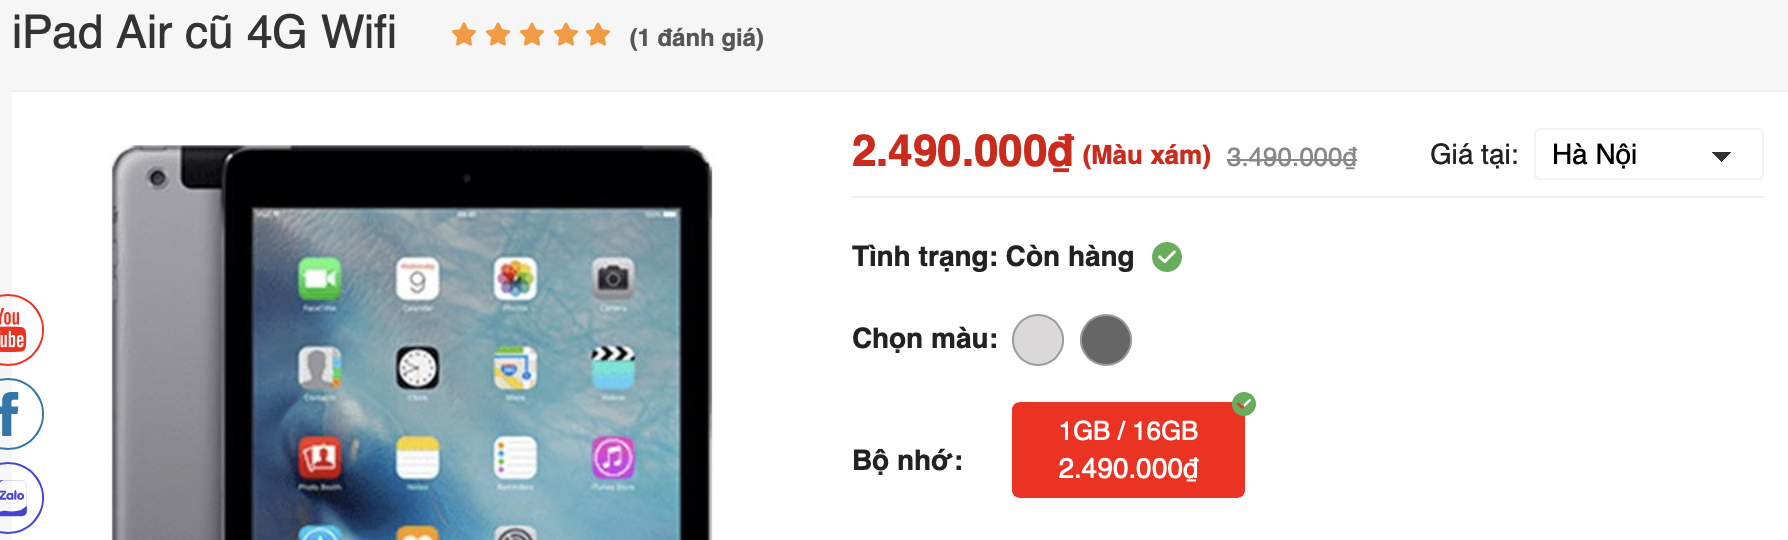 Đây là mẫu iPad rẻ nhất mà vẫn còn sử dụng được, giá chỉ hơn 2 triệu đồng - Ảnh 2.